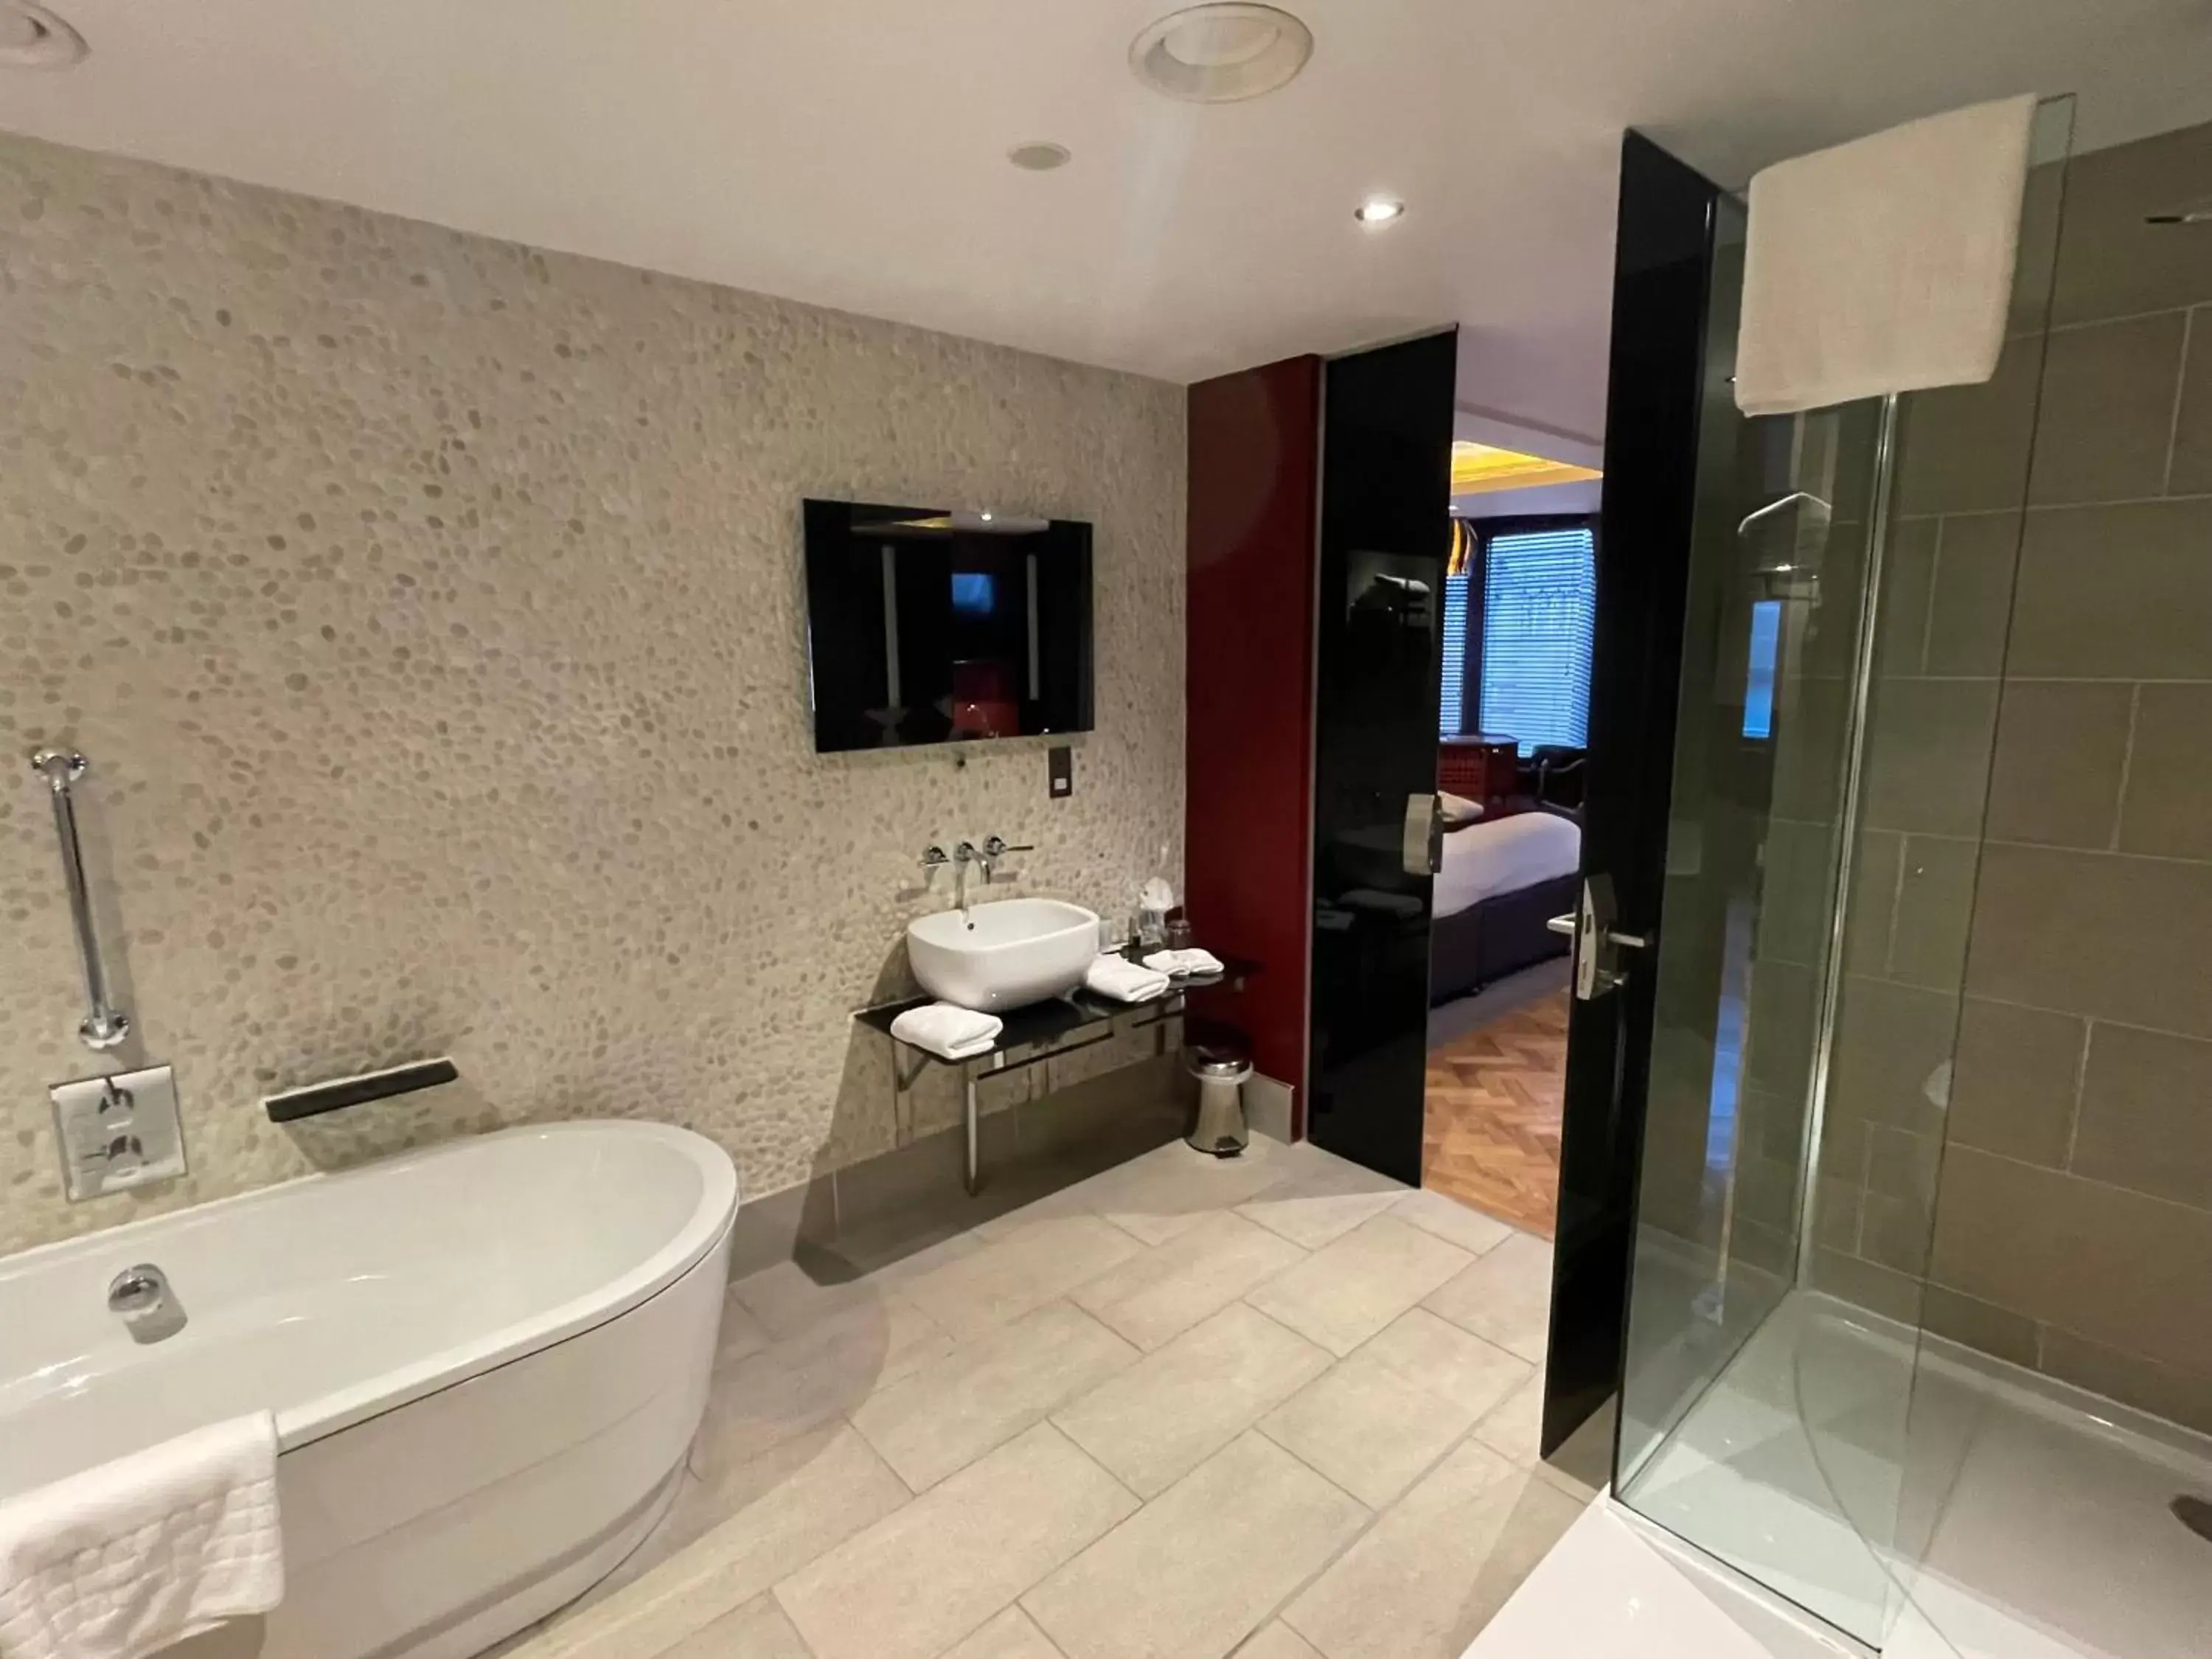 Bathroom in Le Monde Hotel